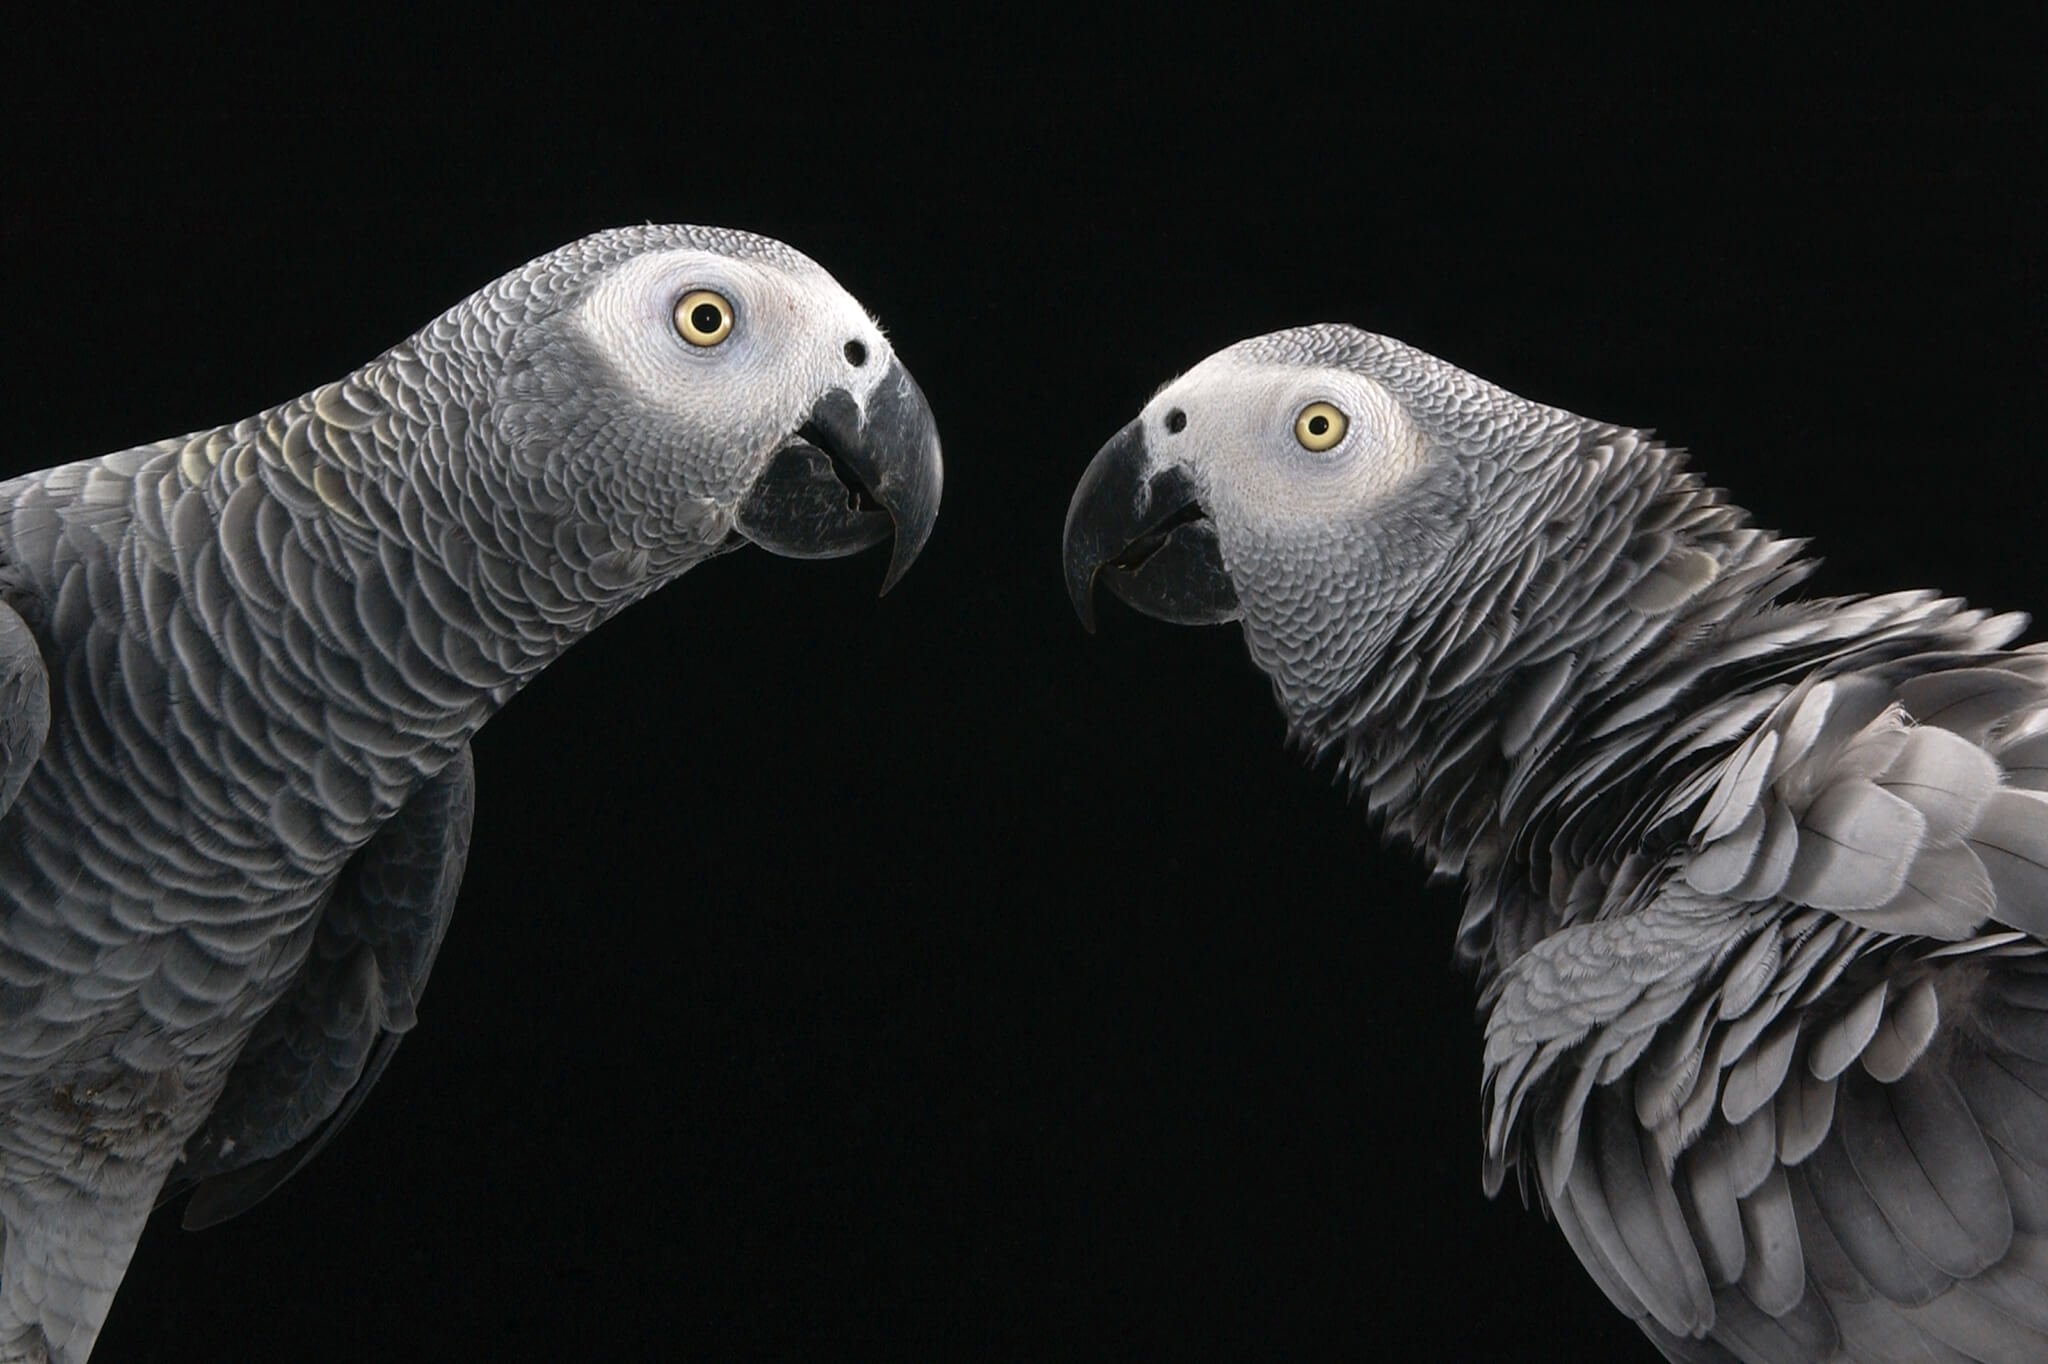 #동영상|아프리카 회색 앵무새 도움이 서로에 대한 무료입니다. 그런데 왜?